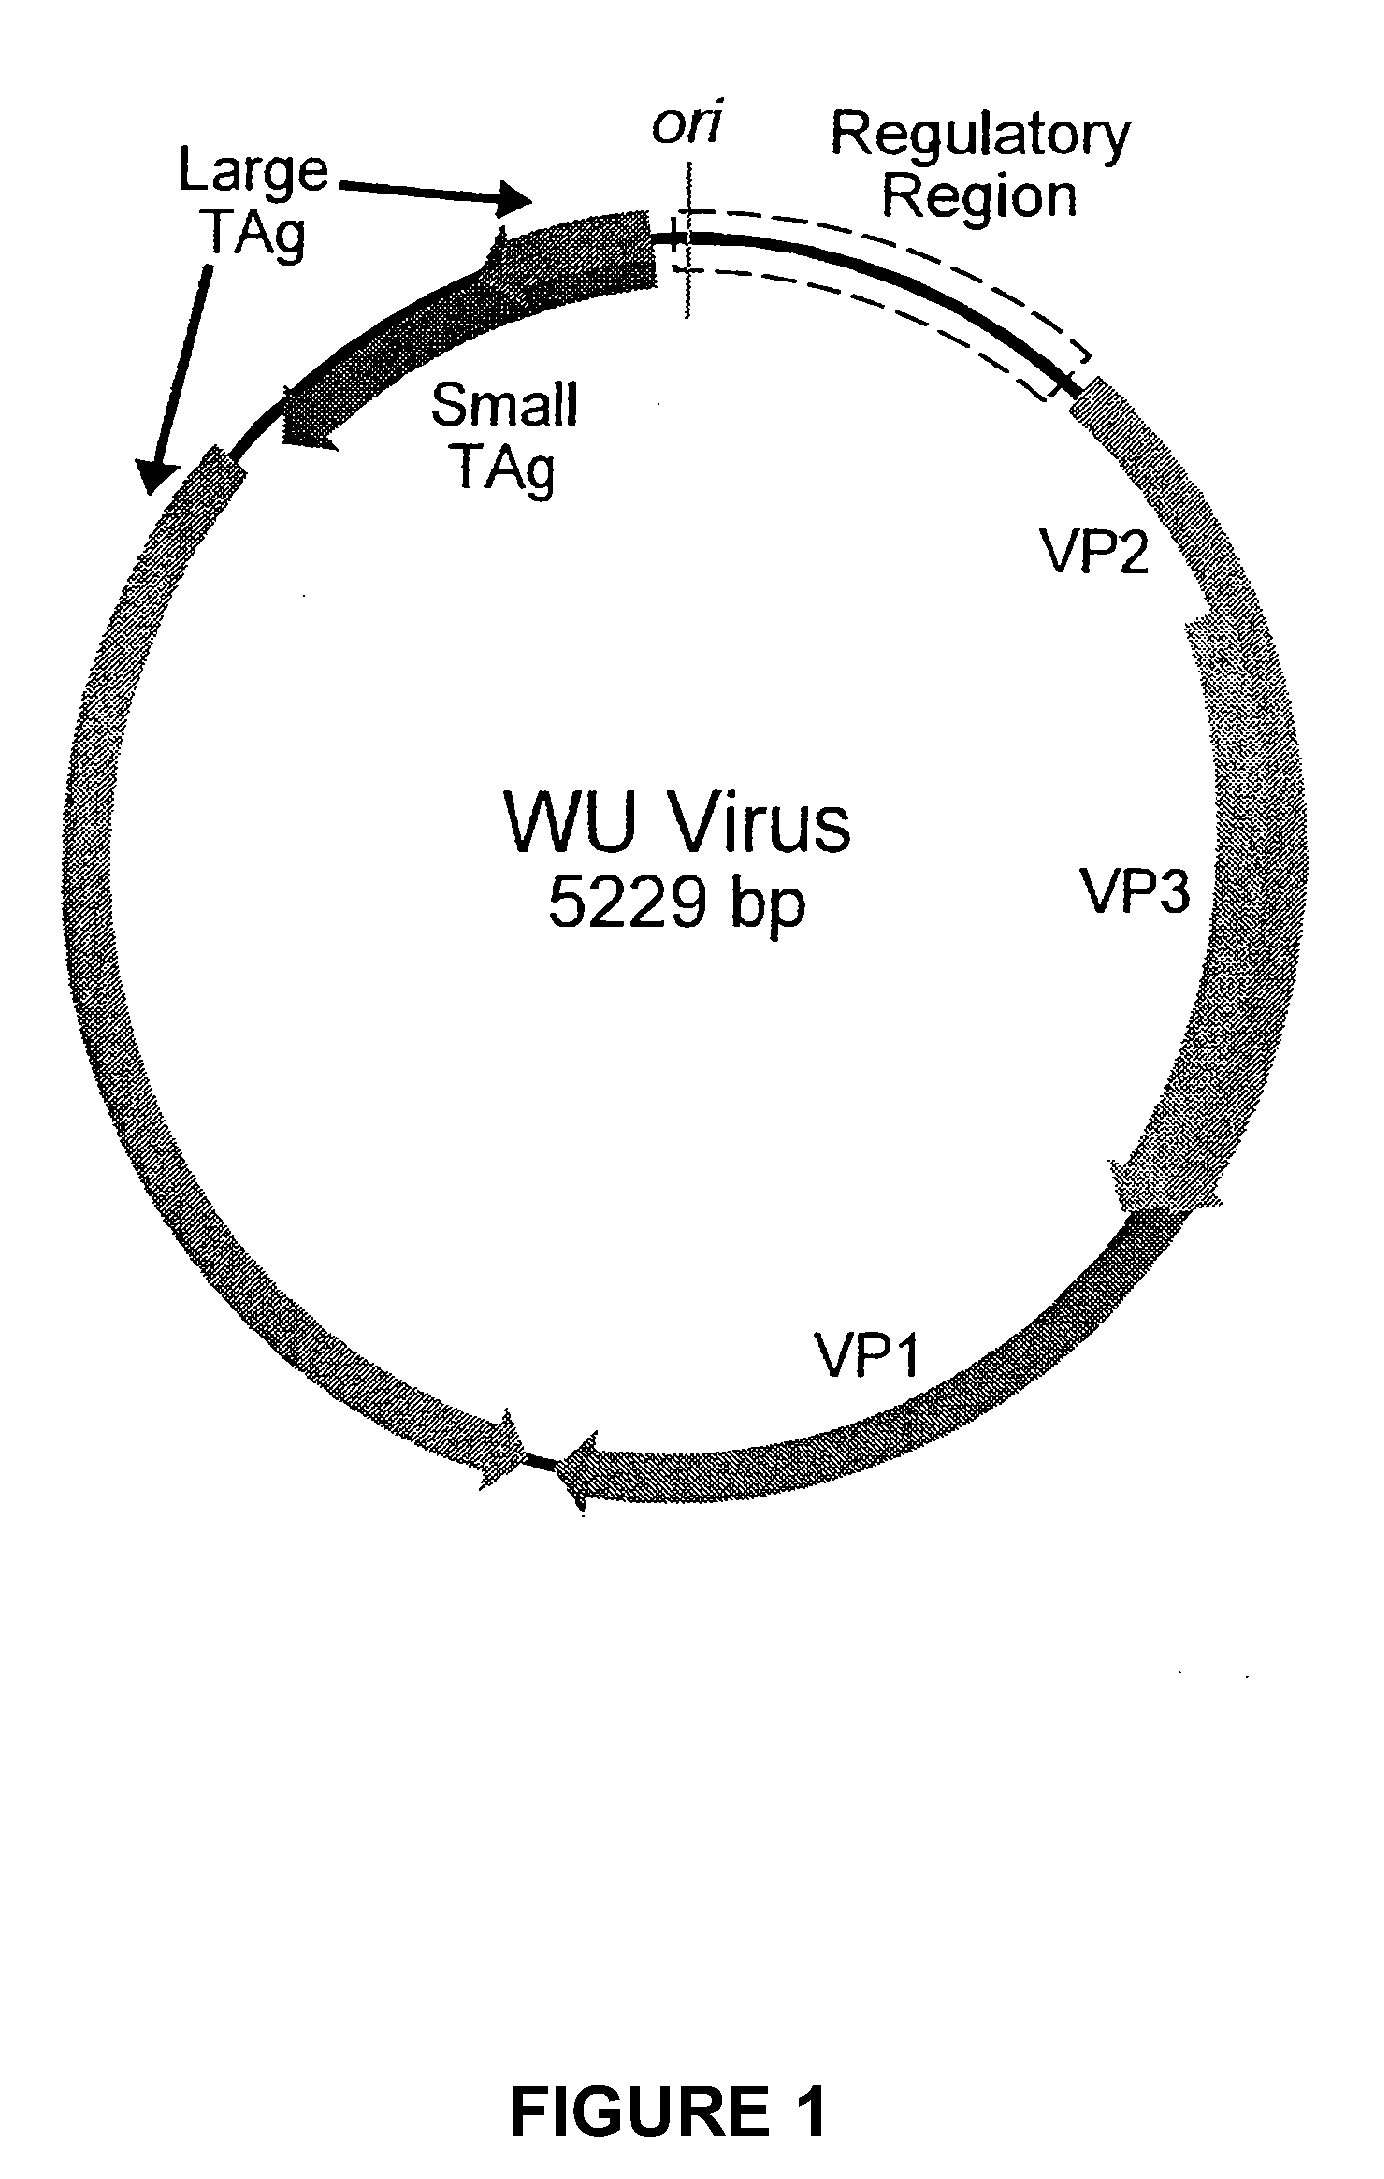 Human polyomavirus, designated the wu virus, obtained from human respiratory secretions